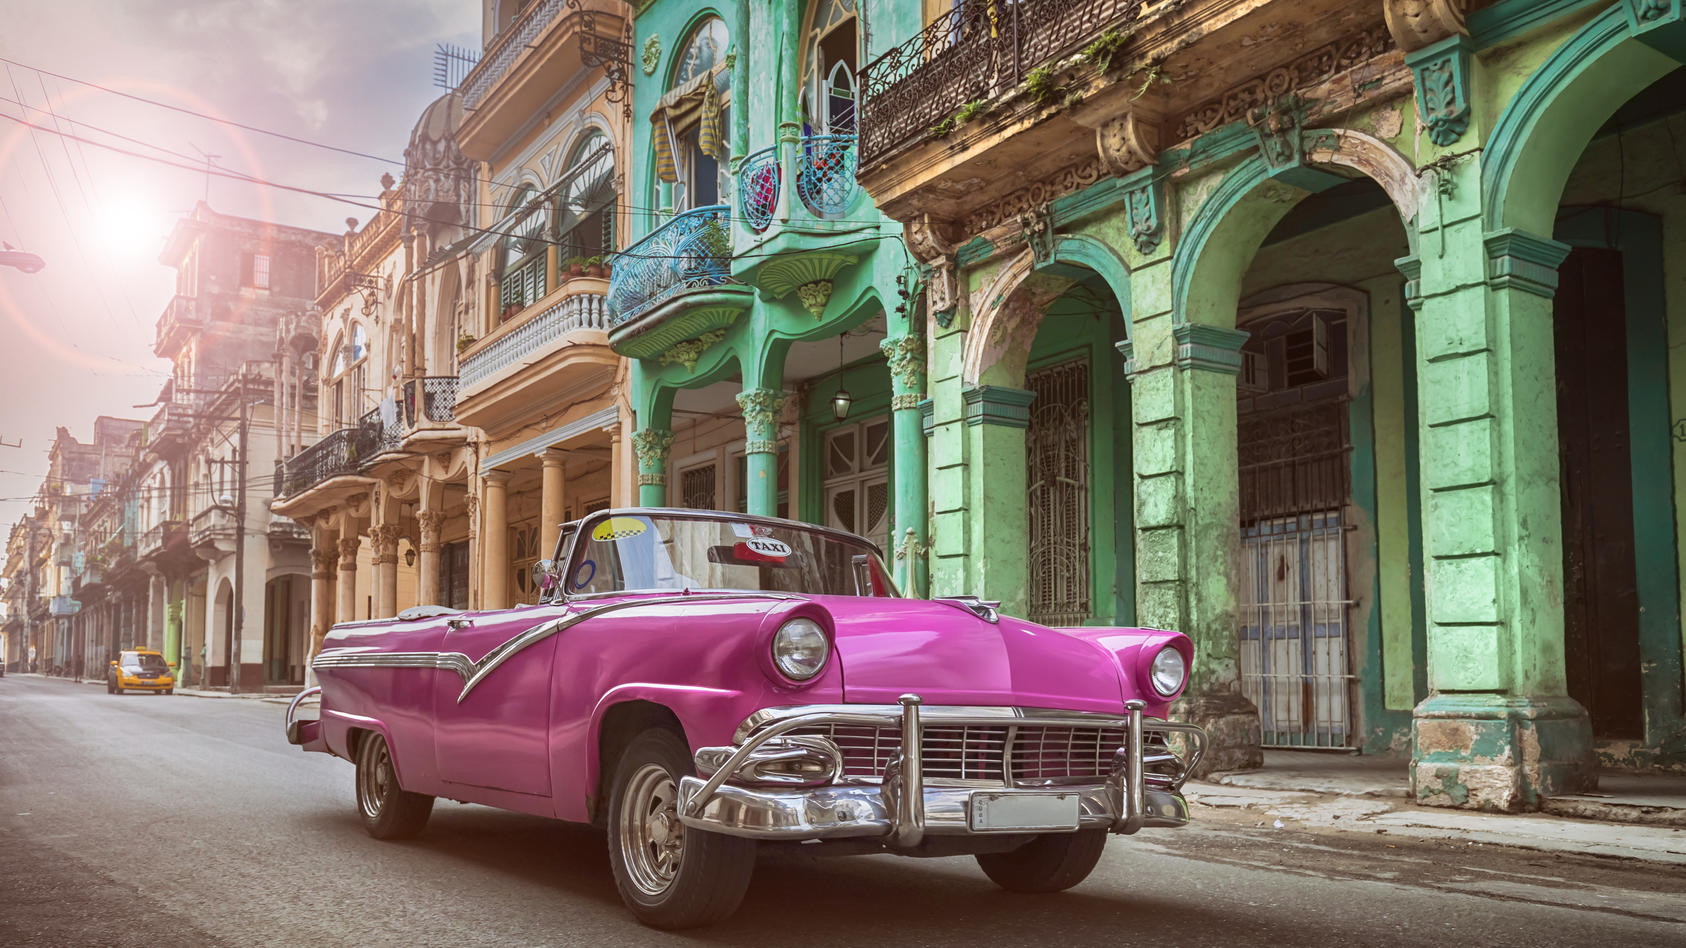 Vor allem die Hauptstadt Havanna ist für die stylischen Oldtimer bekannt.